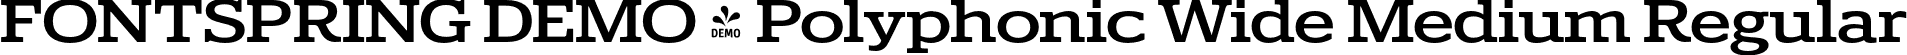 FONTSPRING DEMO - Polyphonic Wide Medium Regular font | Fontspring-DEMO-polyphonic-widemedium.otf